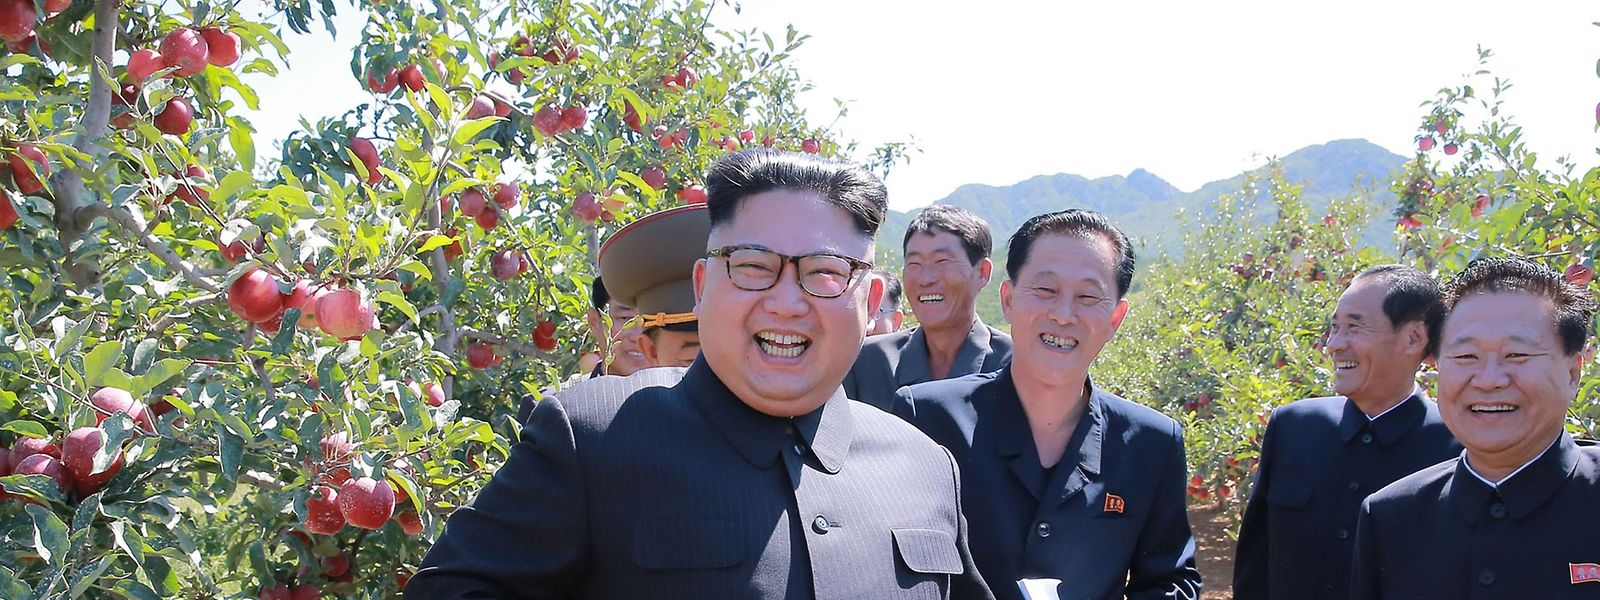 Zeigt sich dem Volk gern gutgelaunt, ist es aber anscheined selten: Kim Jong Un. 